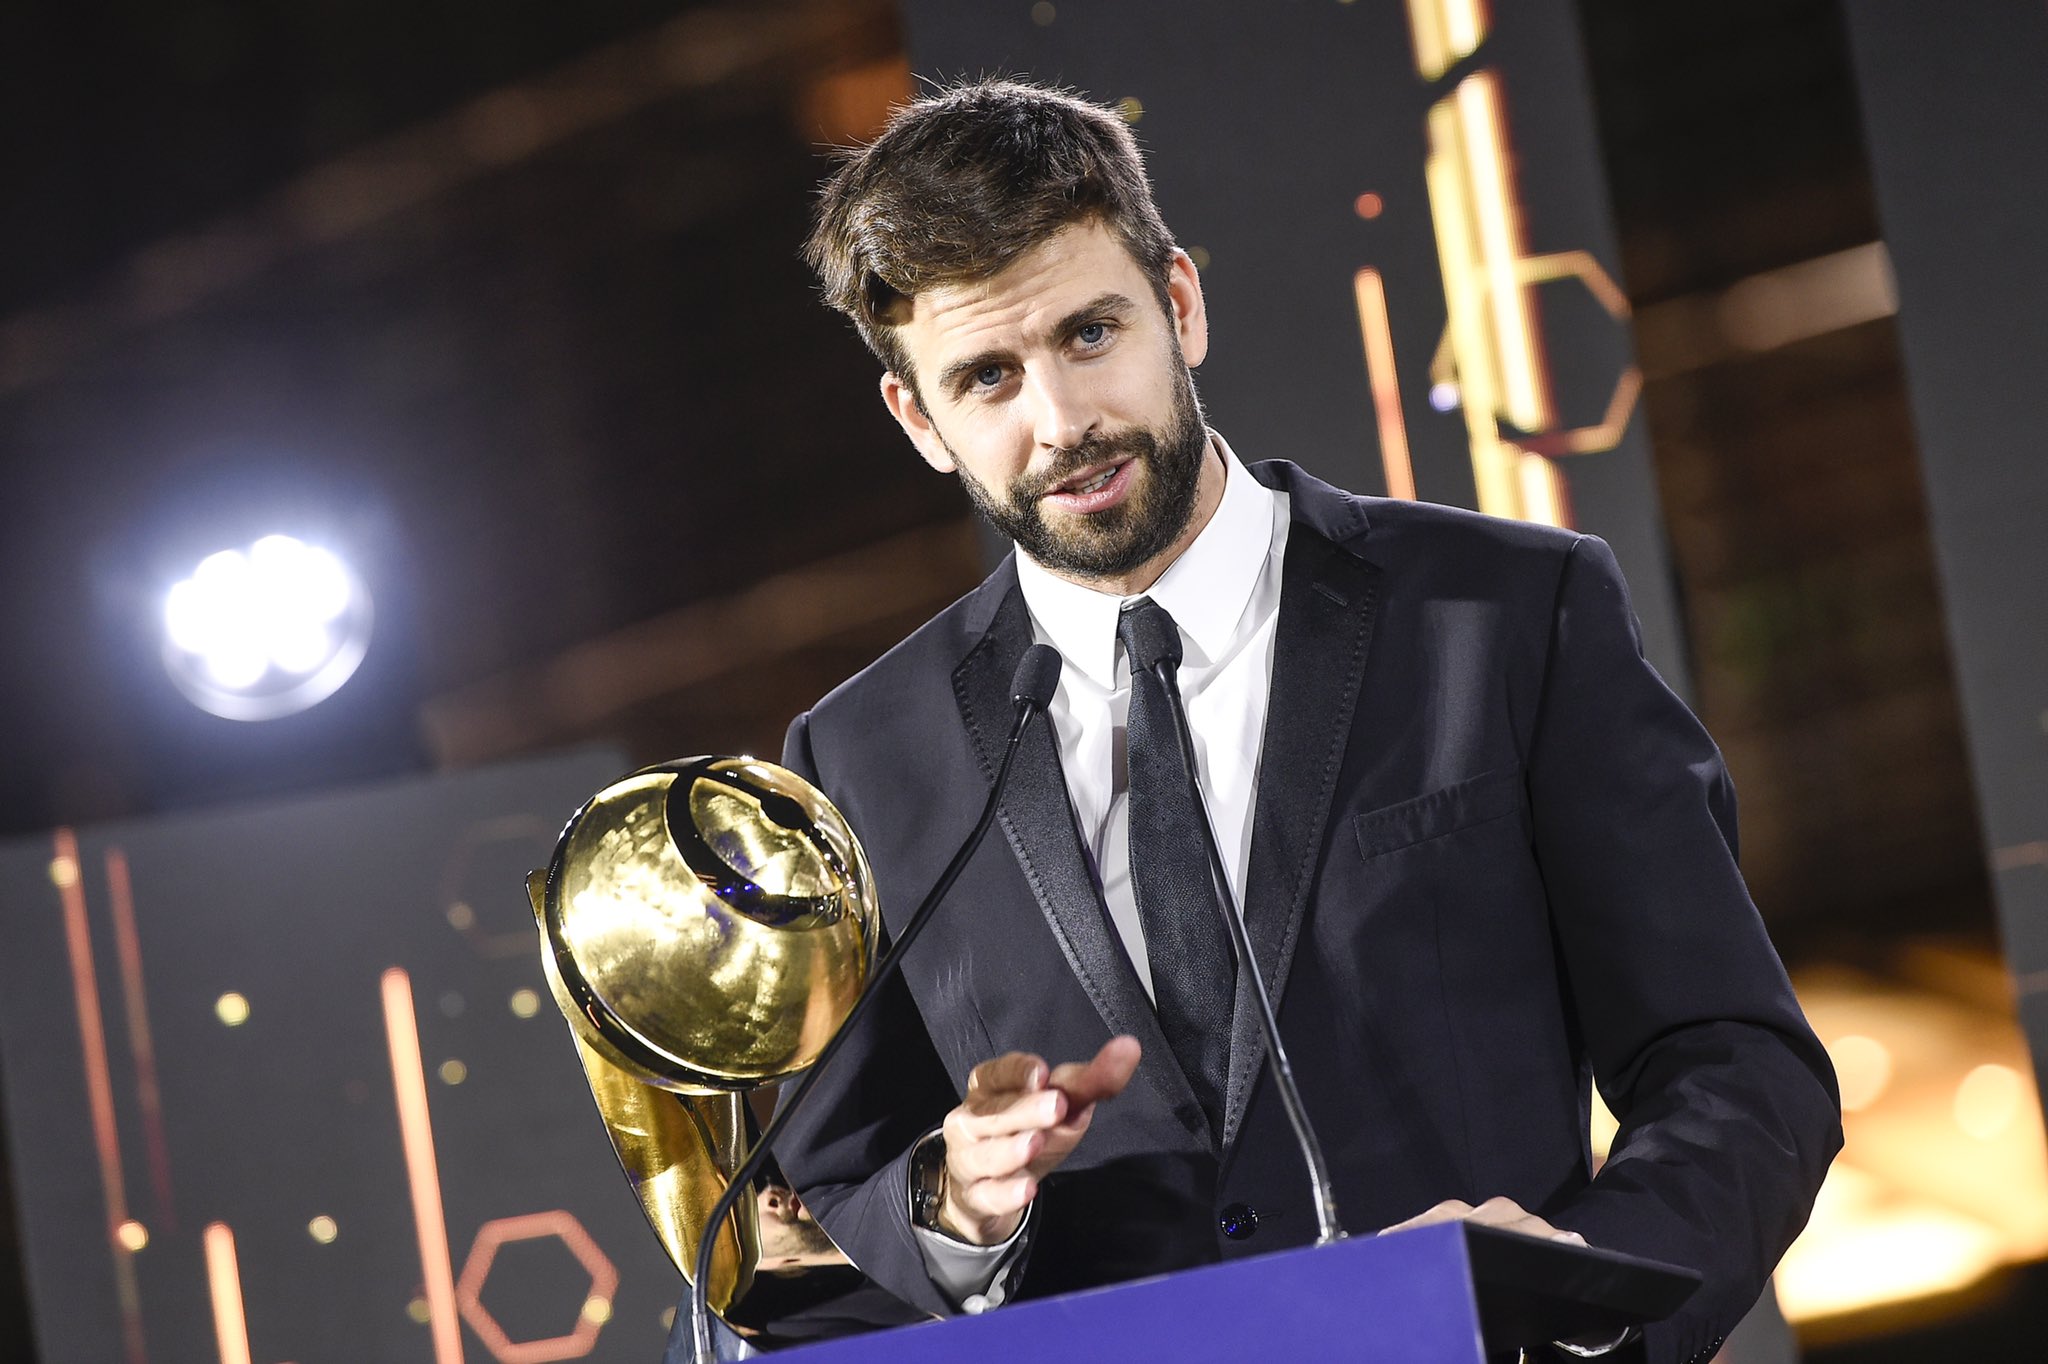 El presidente del FC Andorra, durante la entrega del premio al futbolista con la mejor carrera entregado en Dubai en diciembre de 2021. (Foto Prensa Libre: Global Soccer Awards)